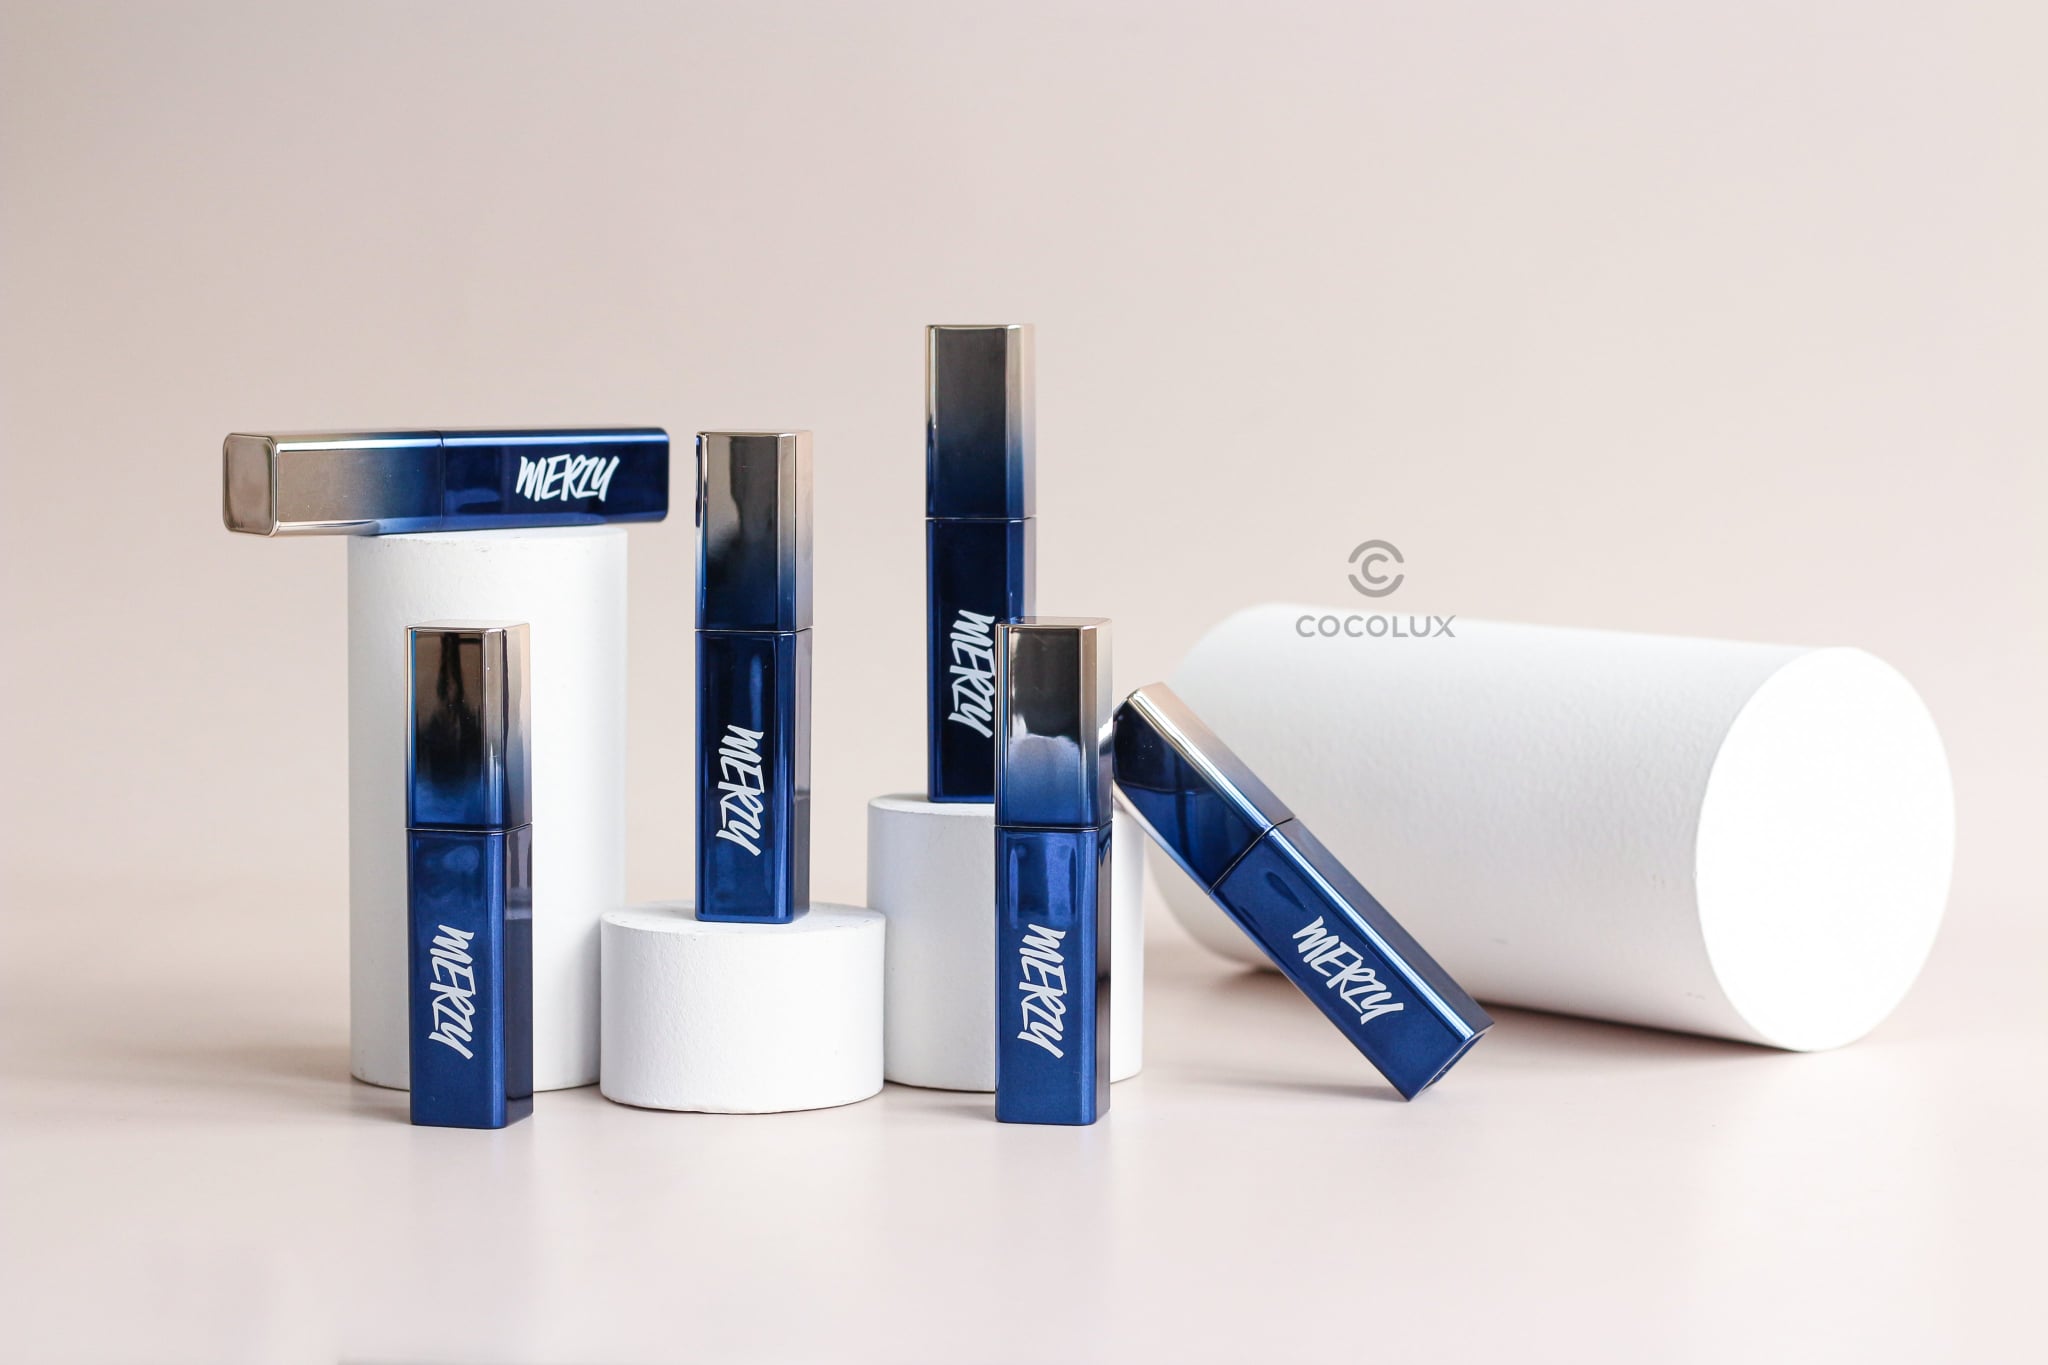 Son Kem Merzy The First Velvet Tint Ver Blue - V17